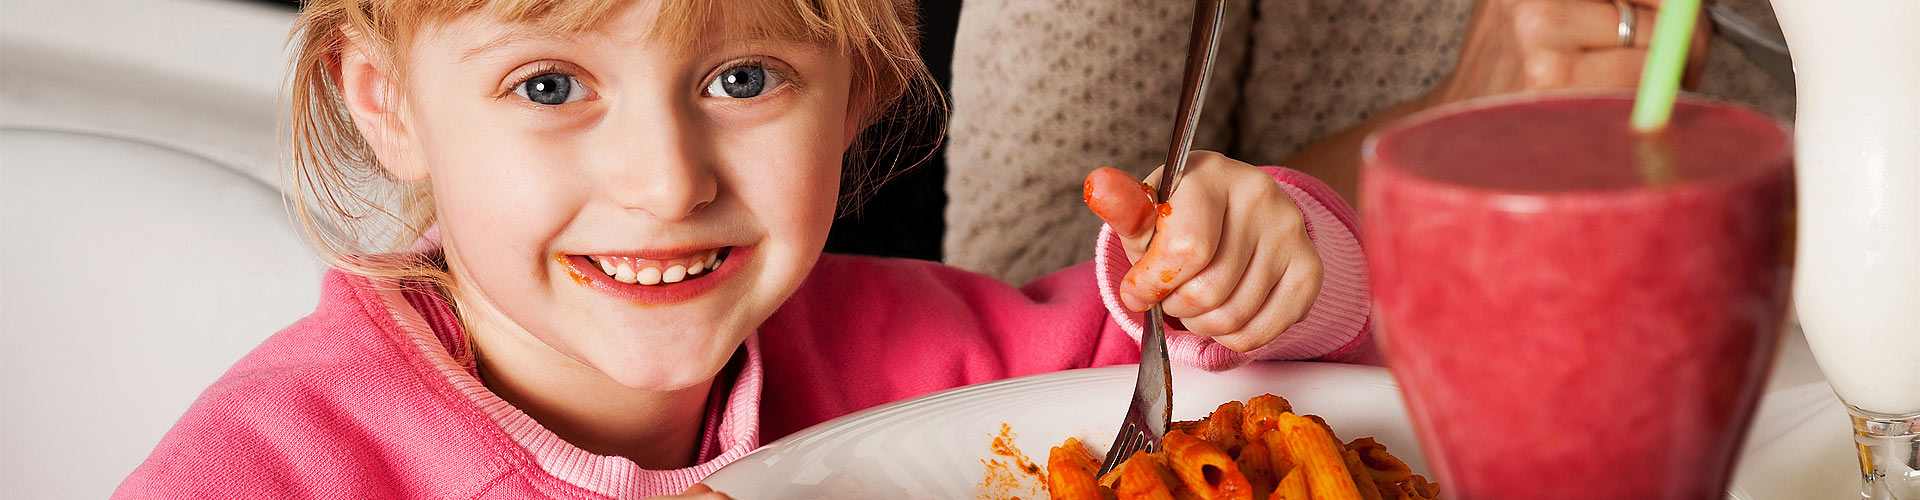 Restaurantes baratos para ir con niños en España